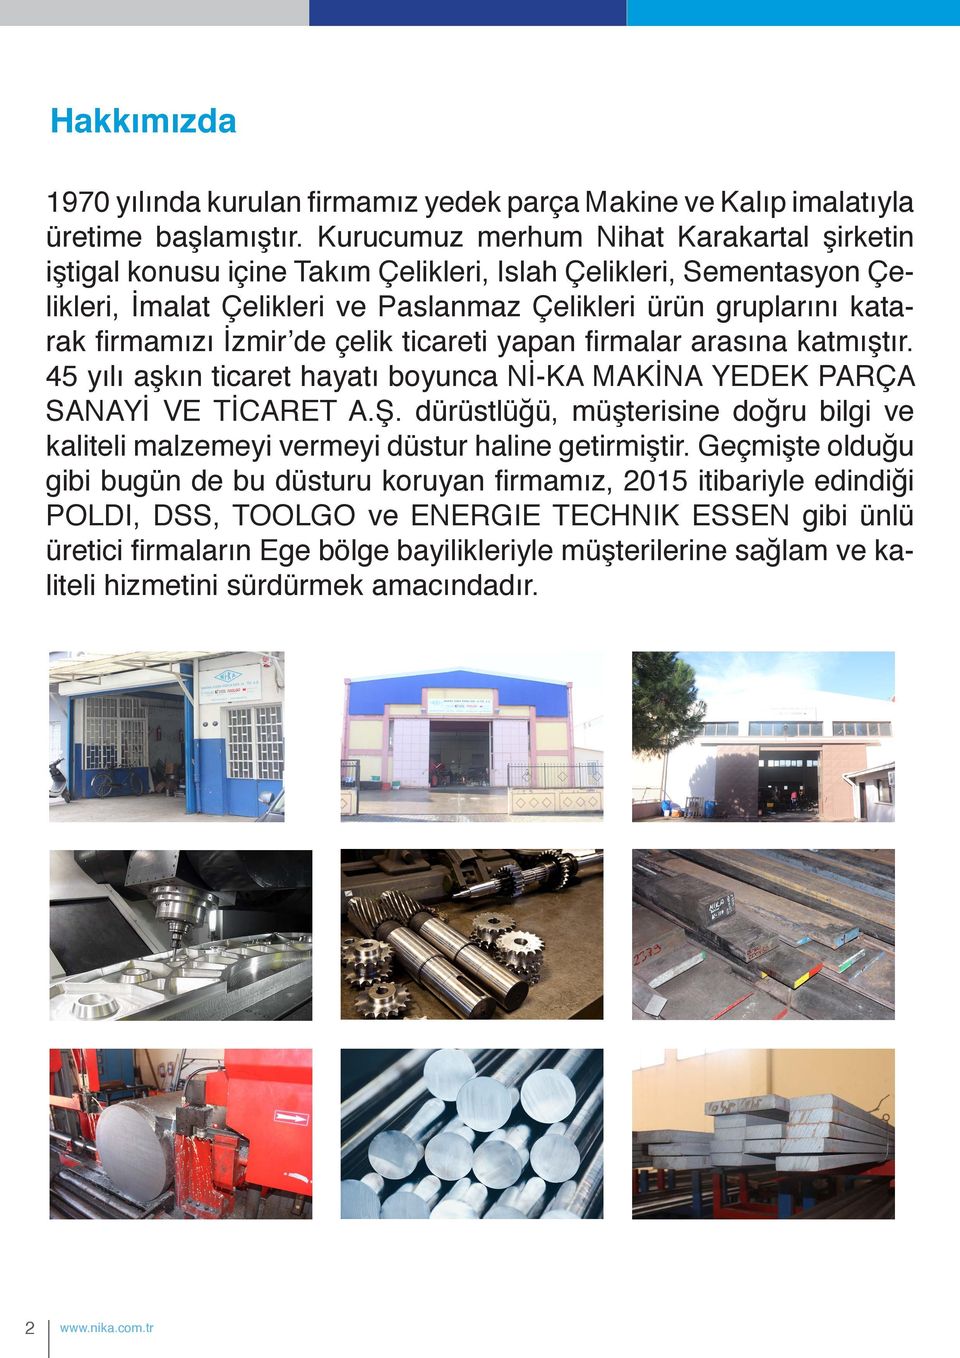 İzmir de çelik ticareti yapan firmalar arasına katmıştır. 45 yılı aşkın ticaret hayatı boyunca Nİ-KA MAKİNA YEDEK PARÇA SANAYİ VE TİCARET A.Ş.